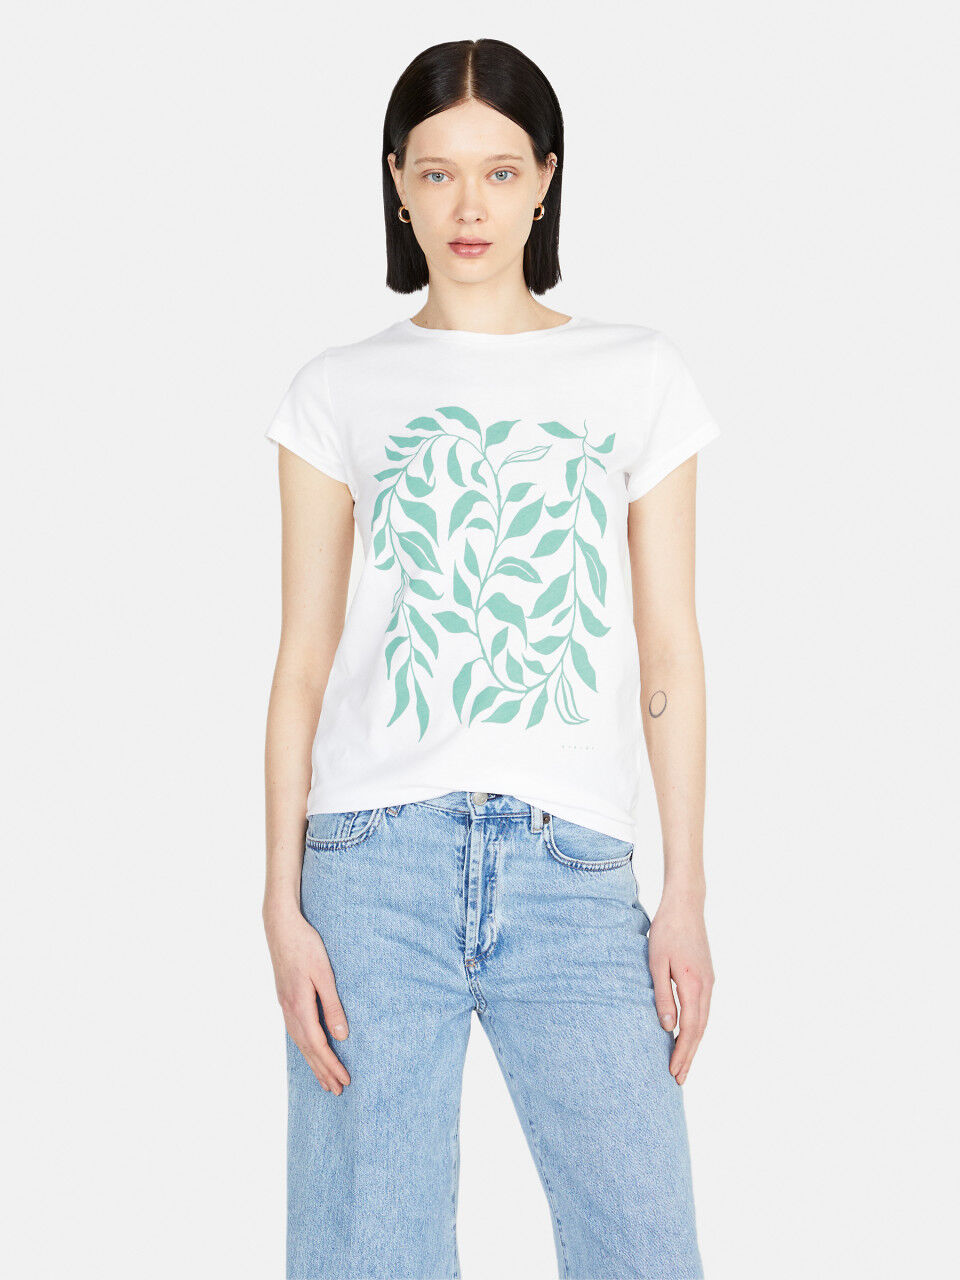 medeleerling Vegen Wegrijden New Women's Short Sleeve T-shirt Collection 2023 | Sisley